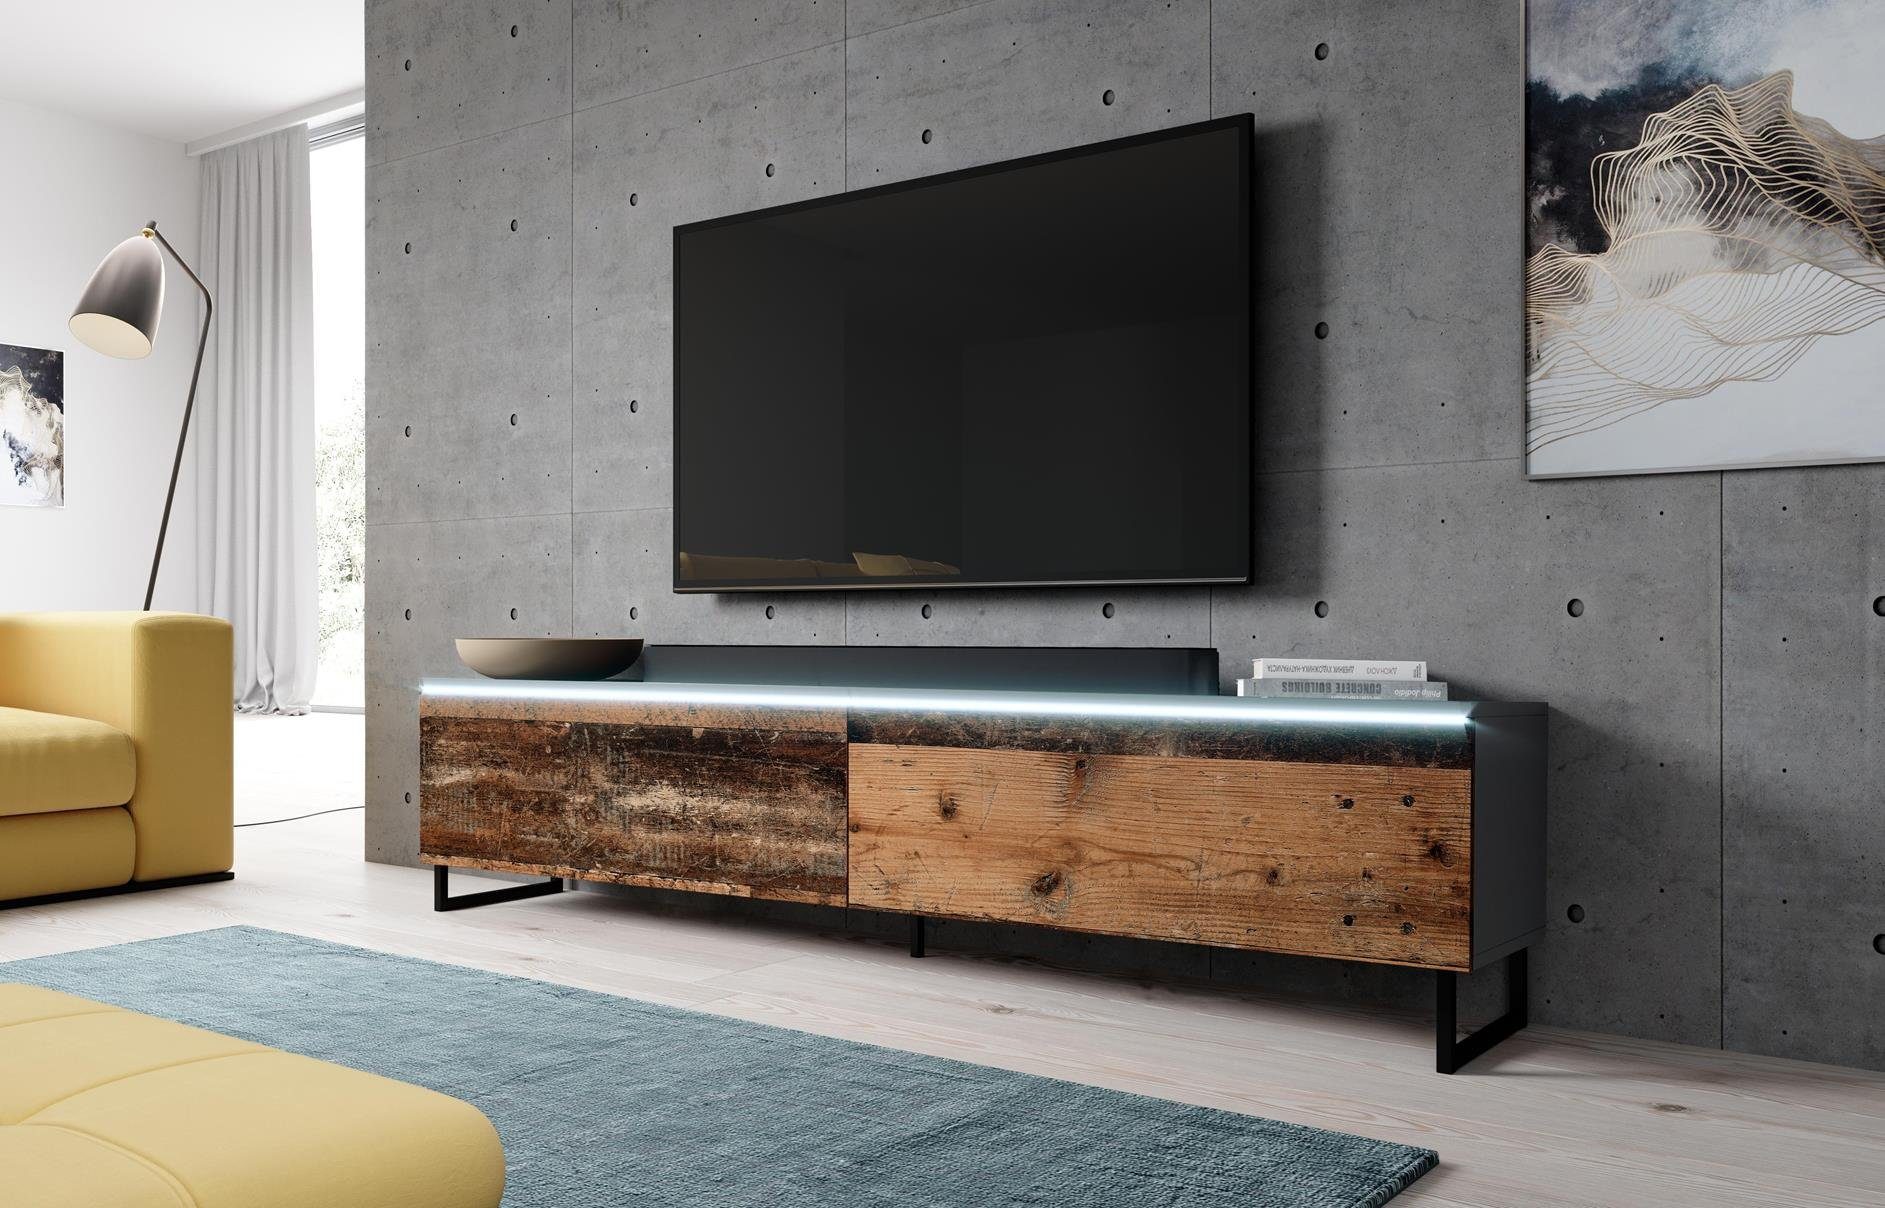 x LED, Metallfüßen Anthrazit/old cm B180 x TV-Board TV-Schrank Furnix mit H34 OHNE BARGO T32 wood